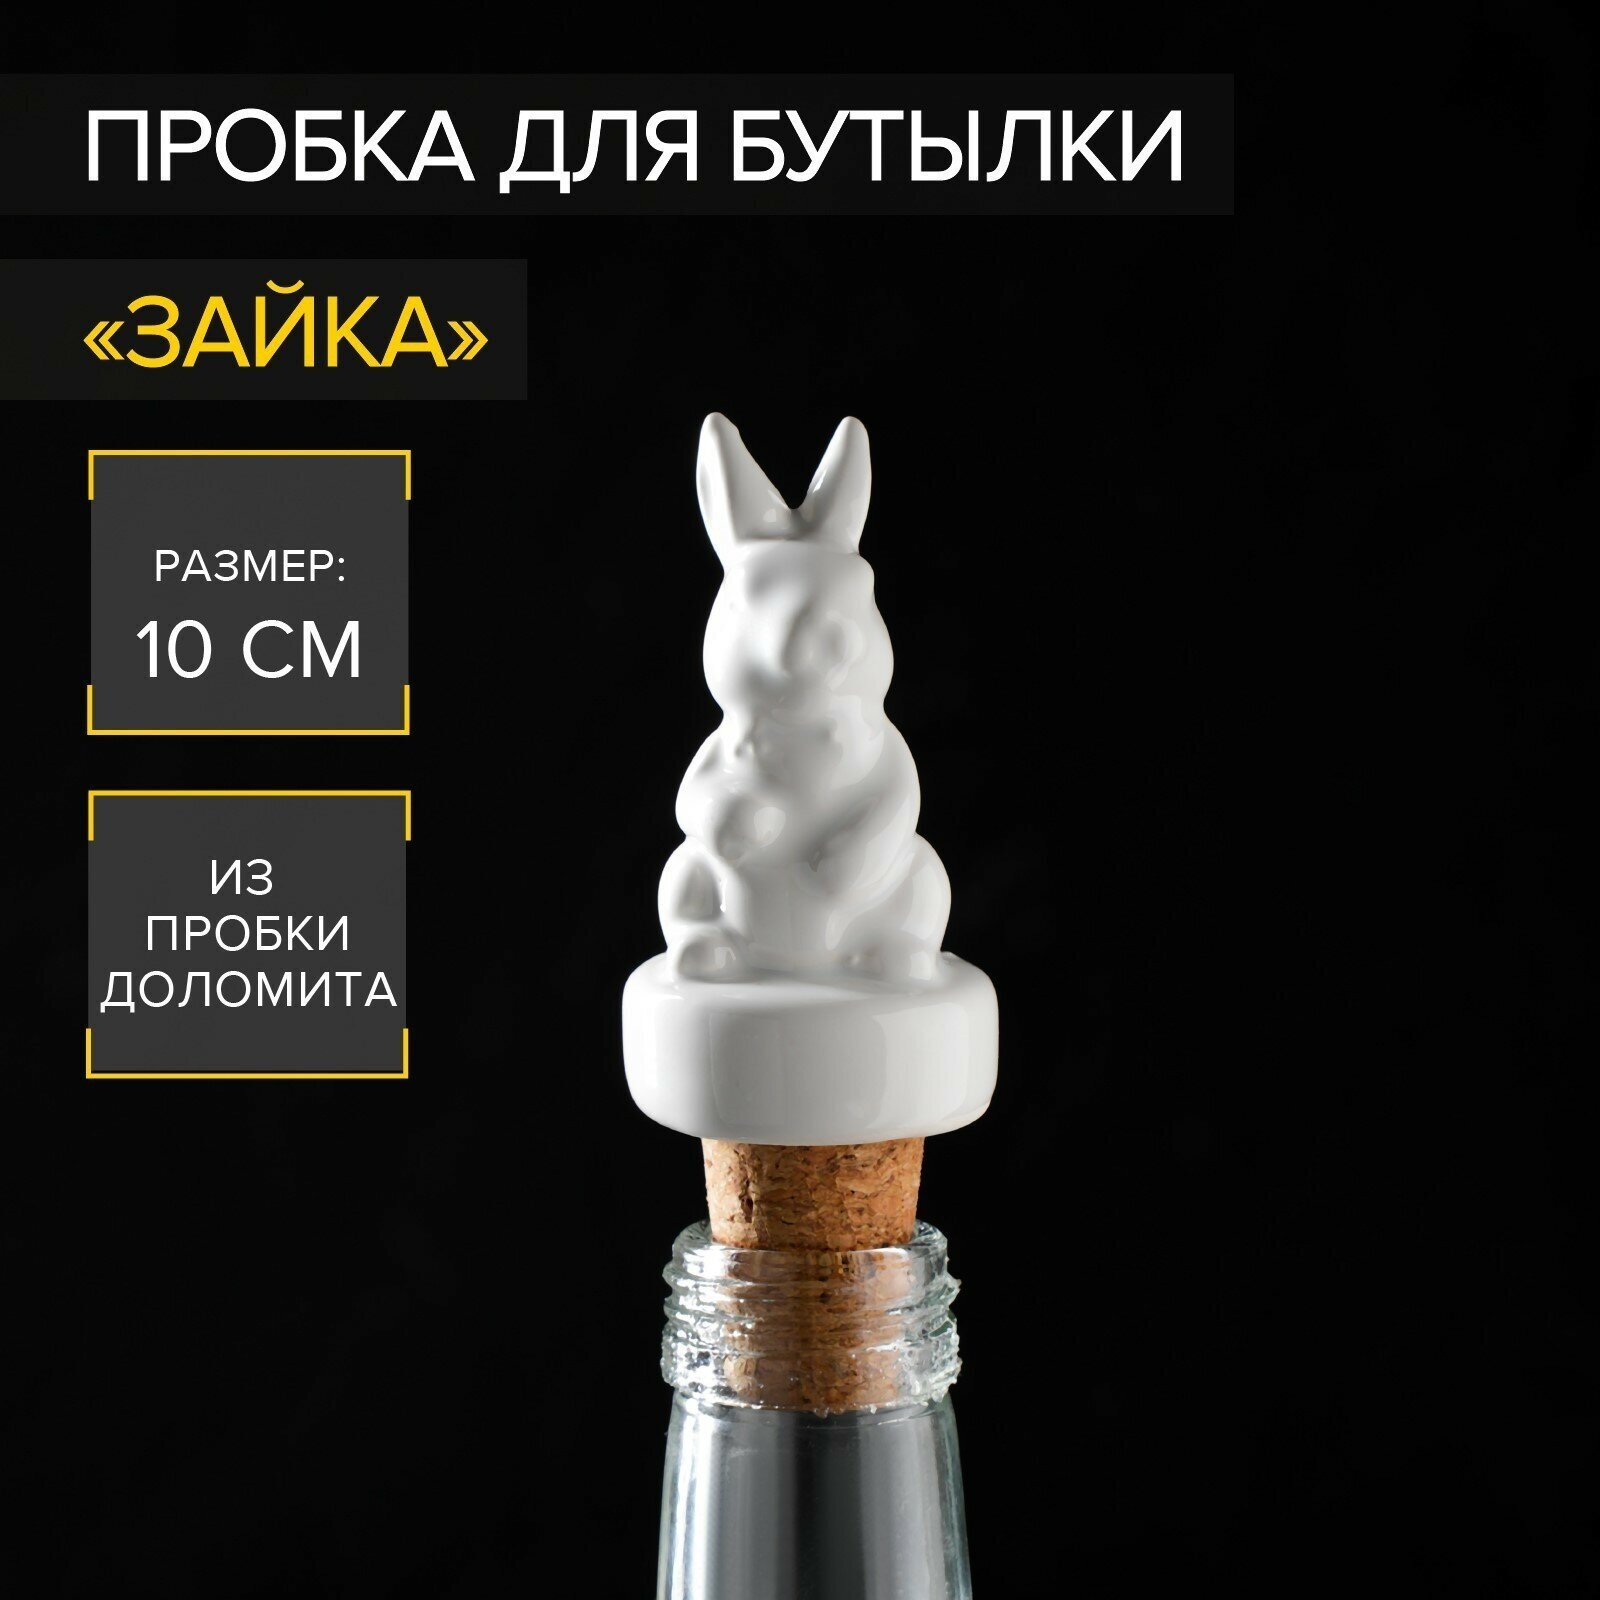 Пробка для бутылки «Зайка», 10 см